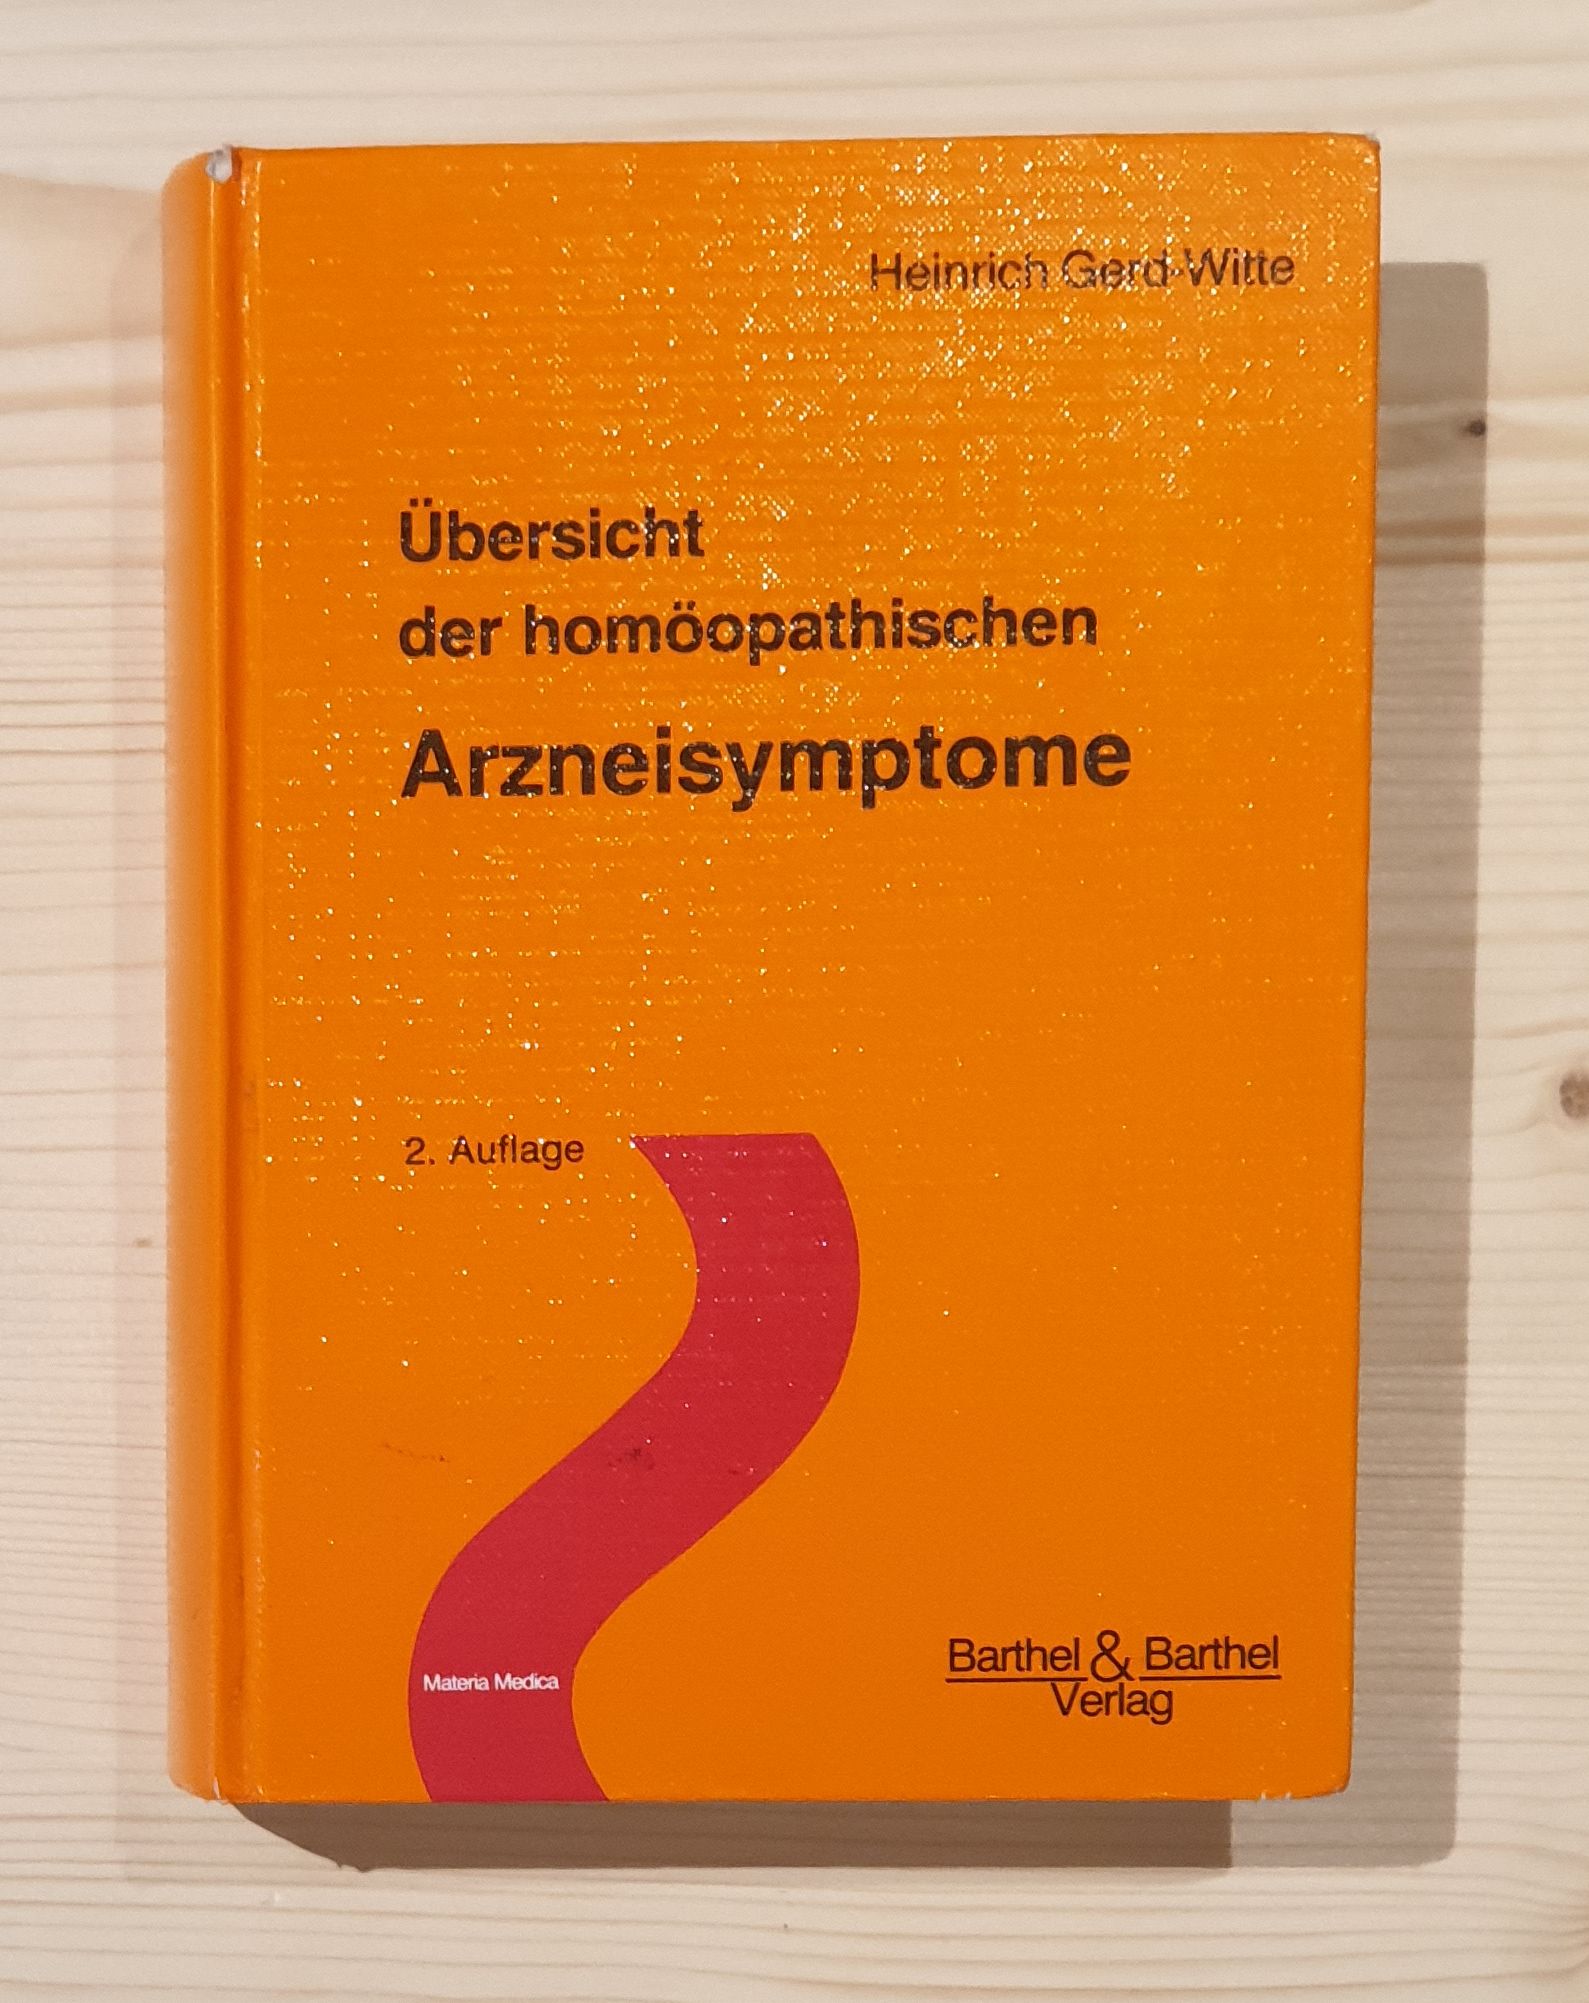 Gerd-Witte, Heinrich:  Übersicht der homöopathischen Arzneisymptome. Materia medica 